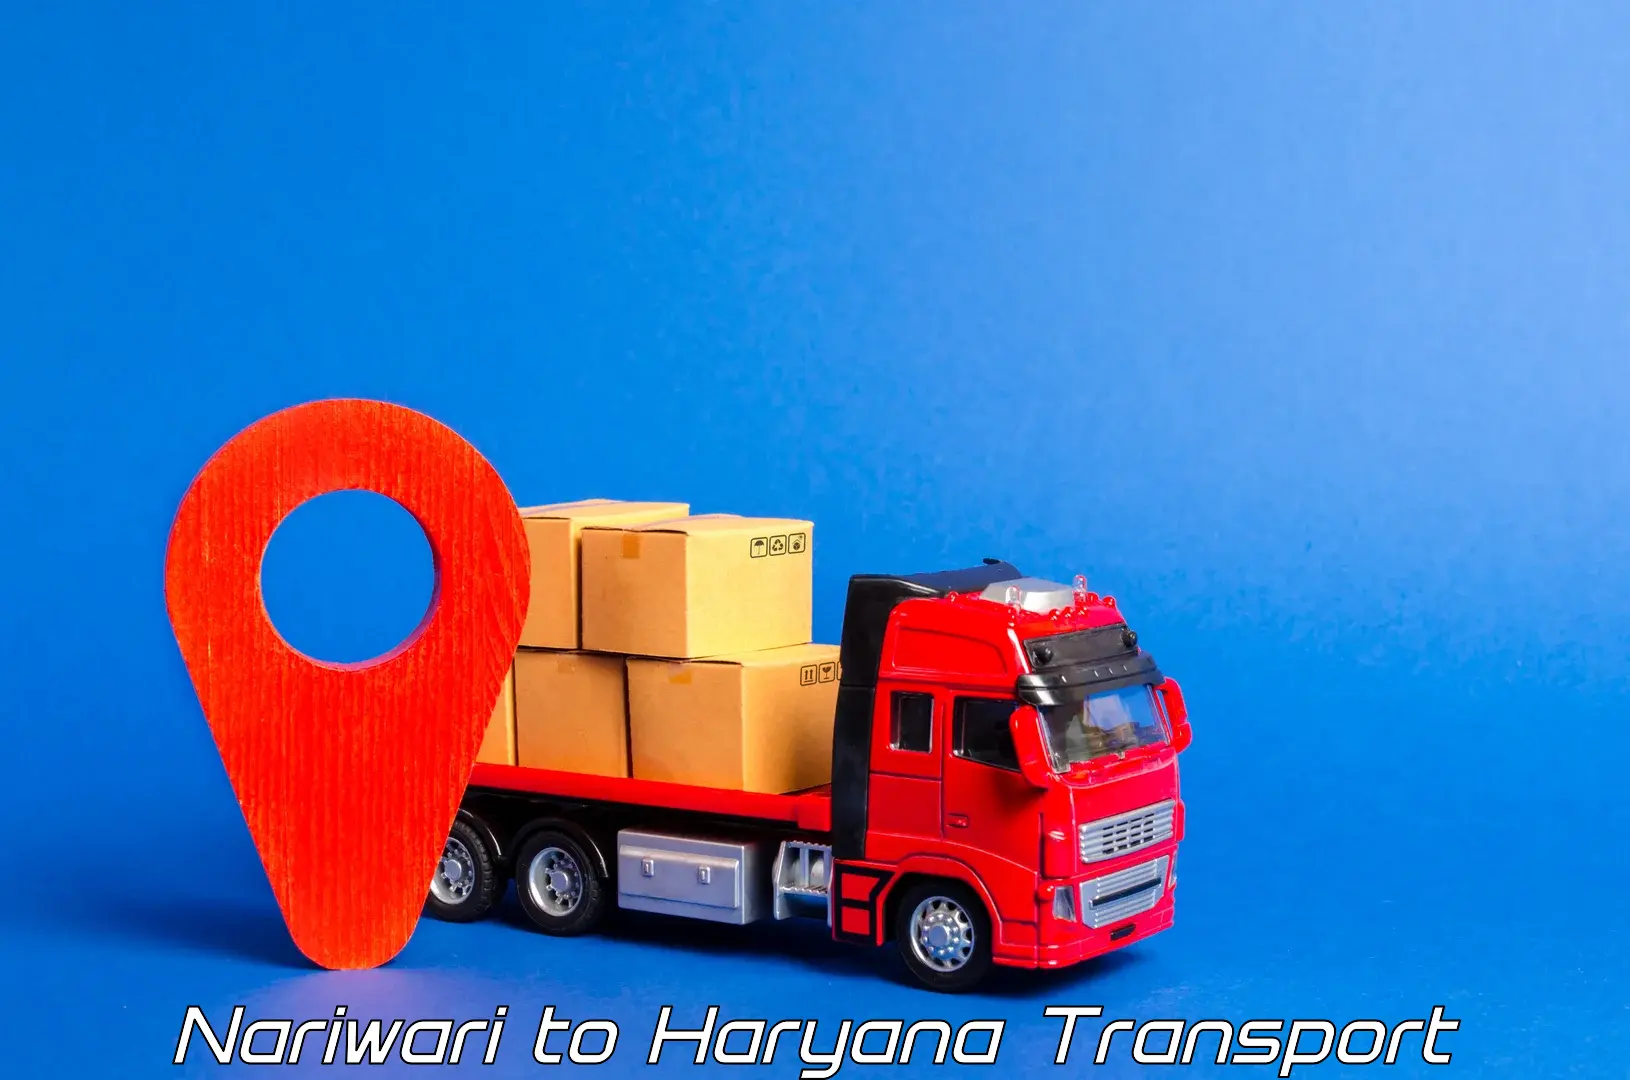 Land transport services in Nariwari to Hansi